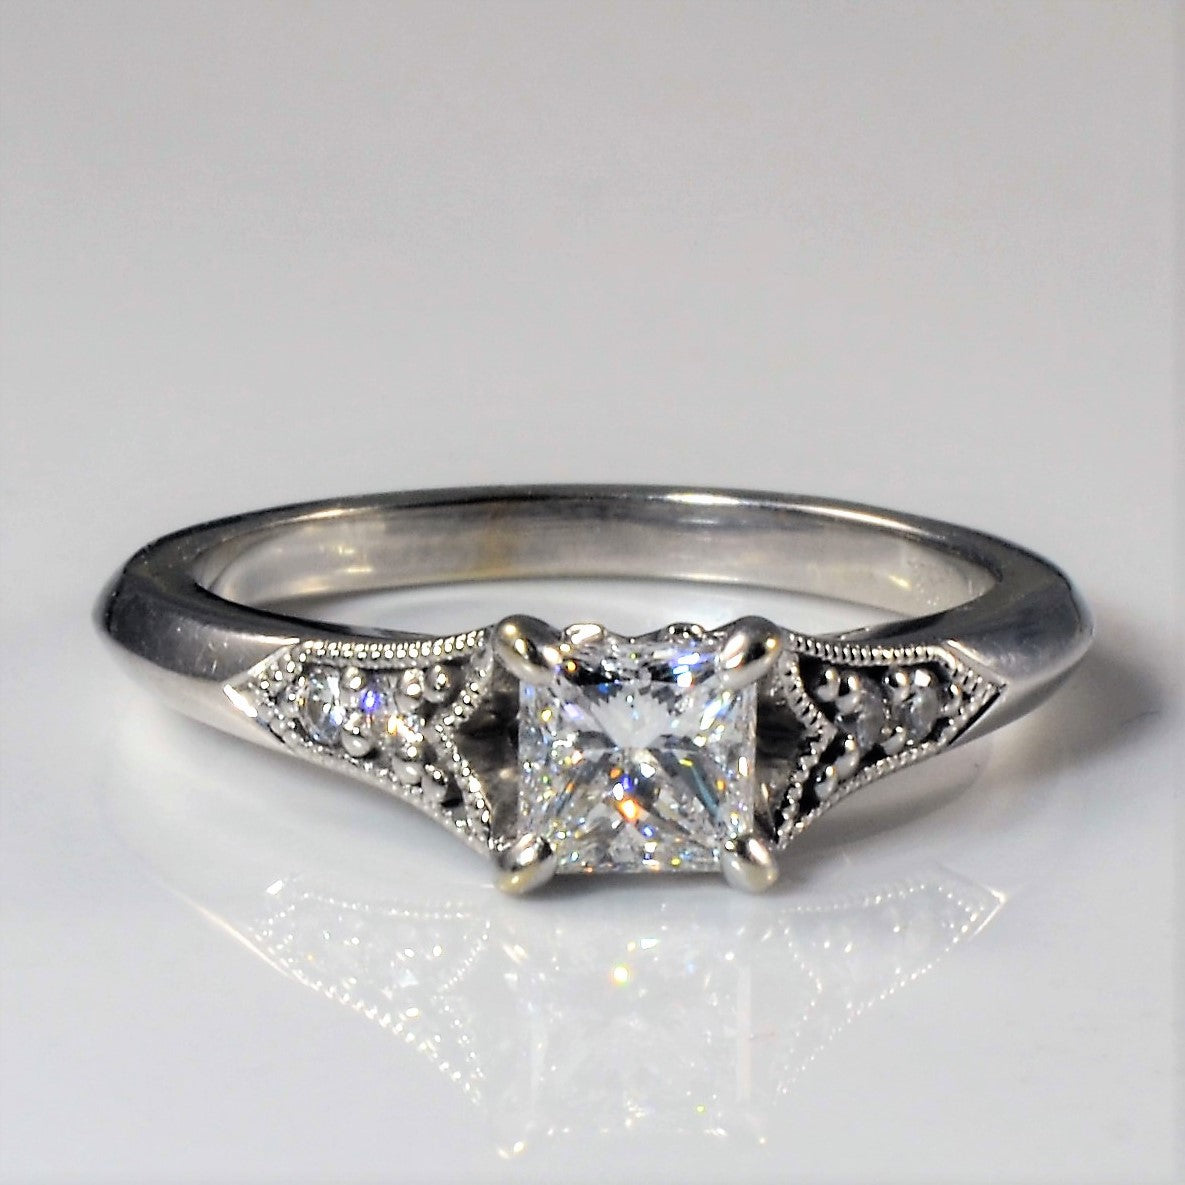 James Allen' Art Deco Inspired Engagement Ring | 0.56ctw | SZ 5.75 |